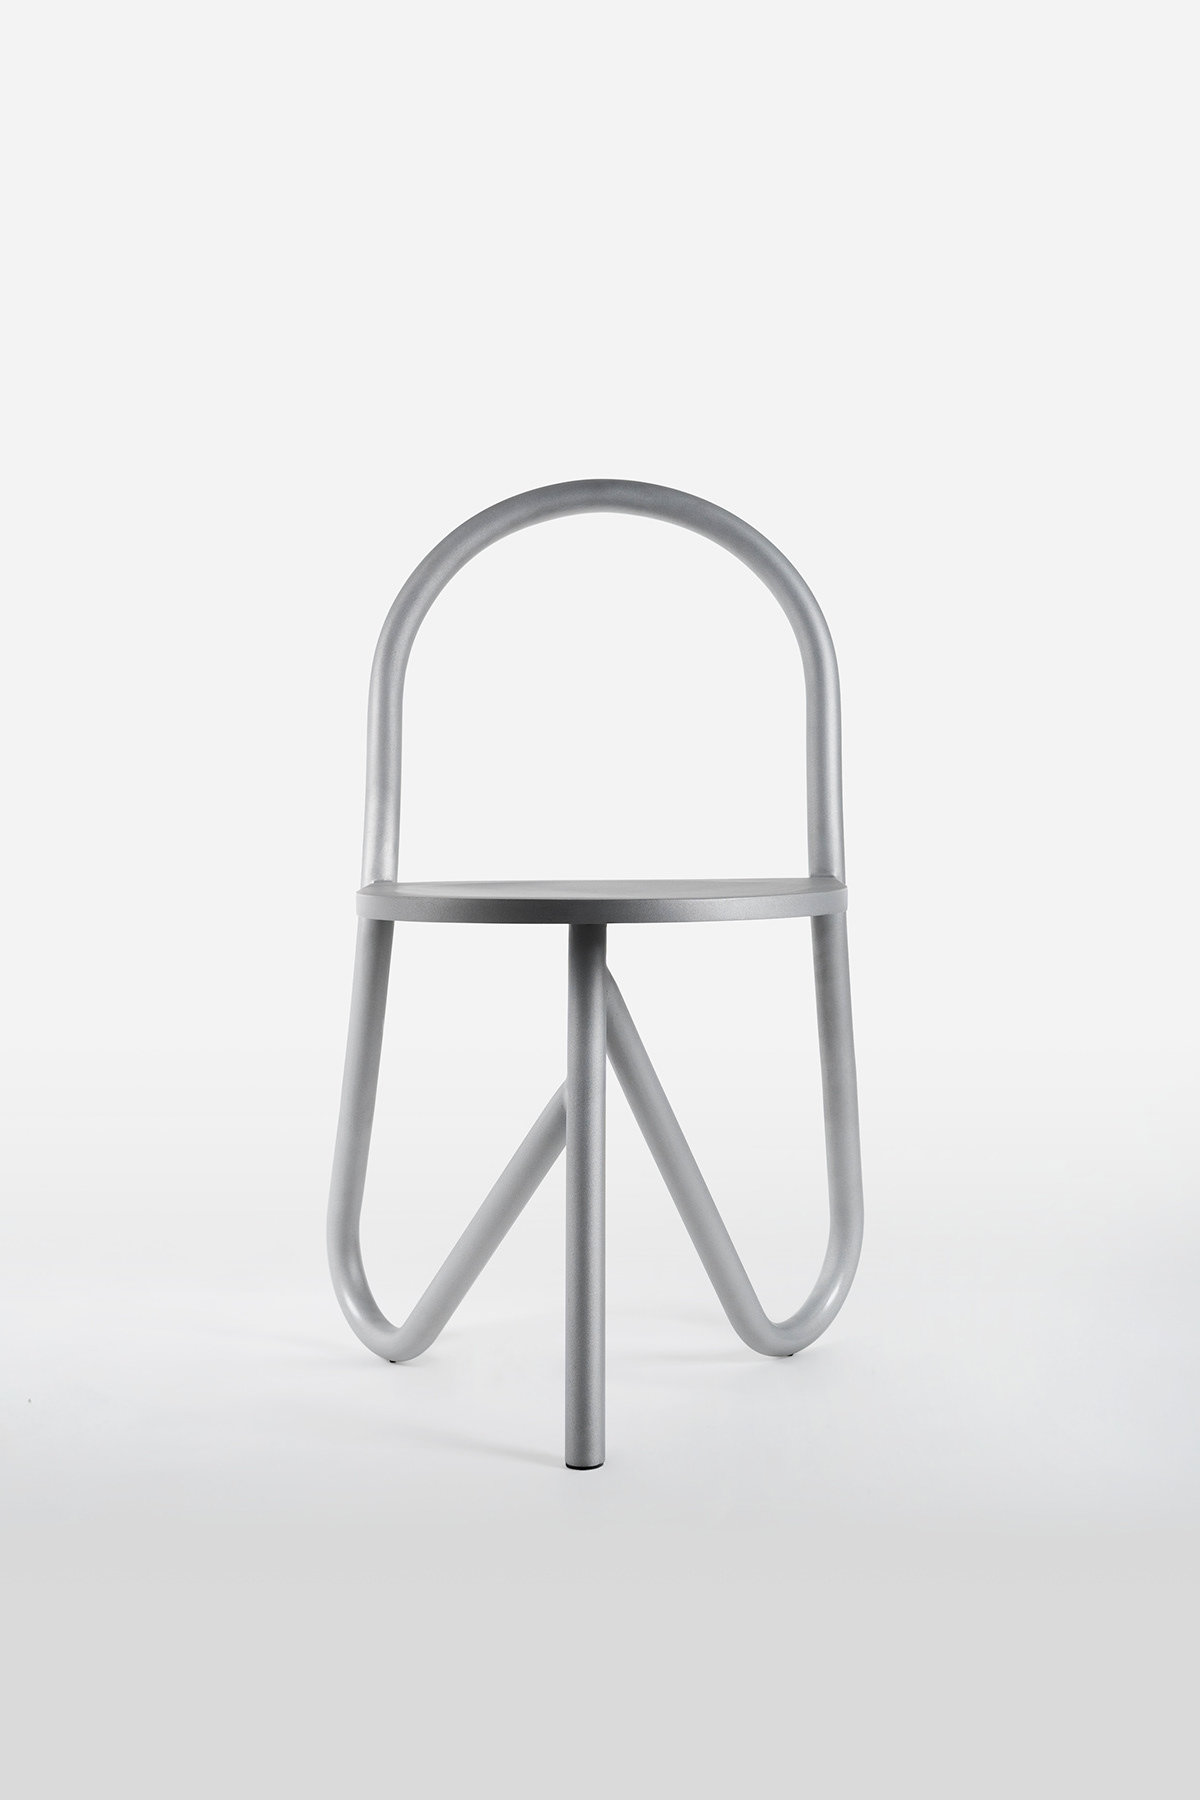 aluminium chair furniture Tripod Chair tube